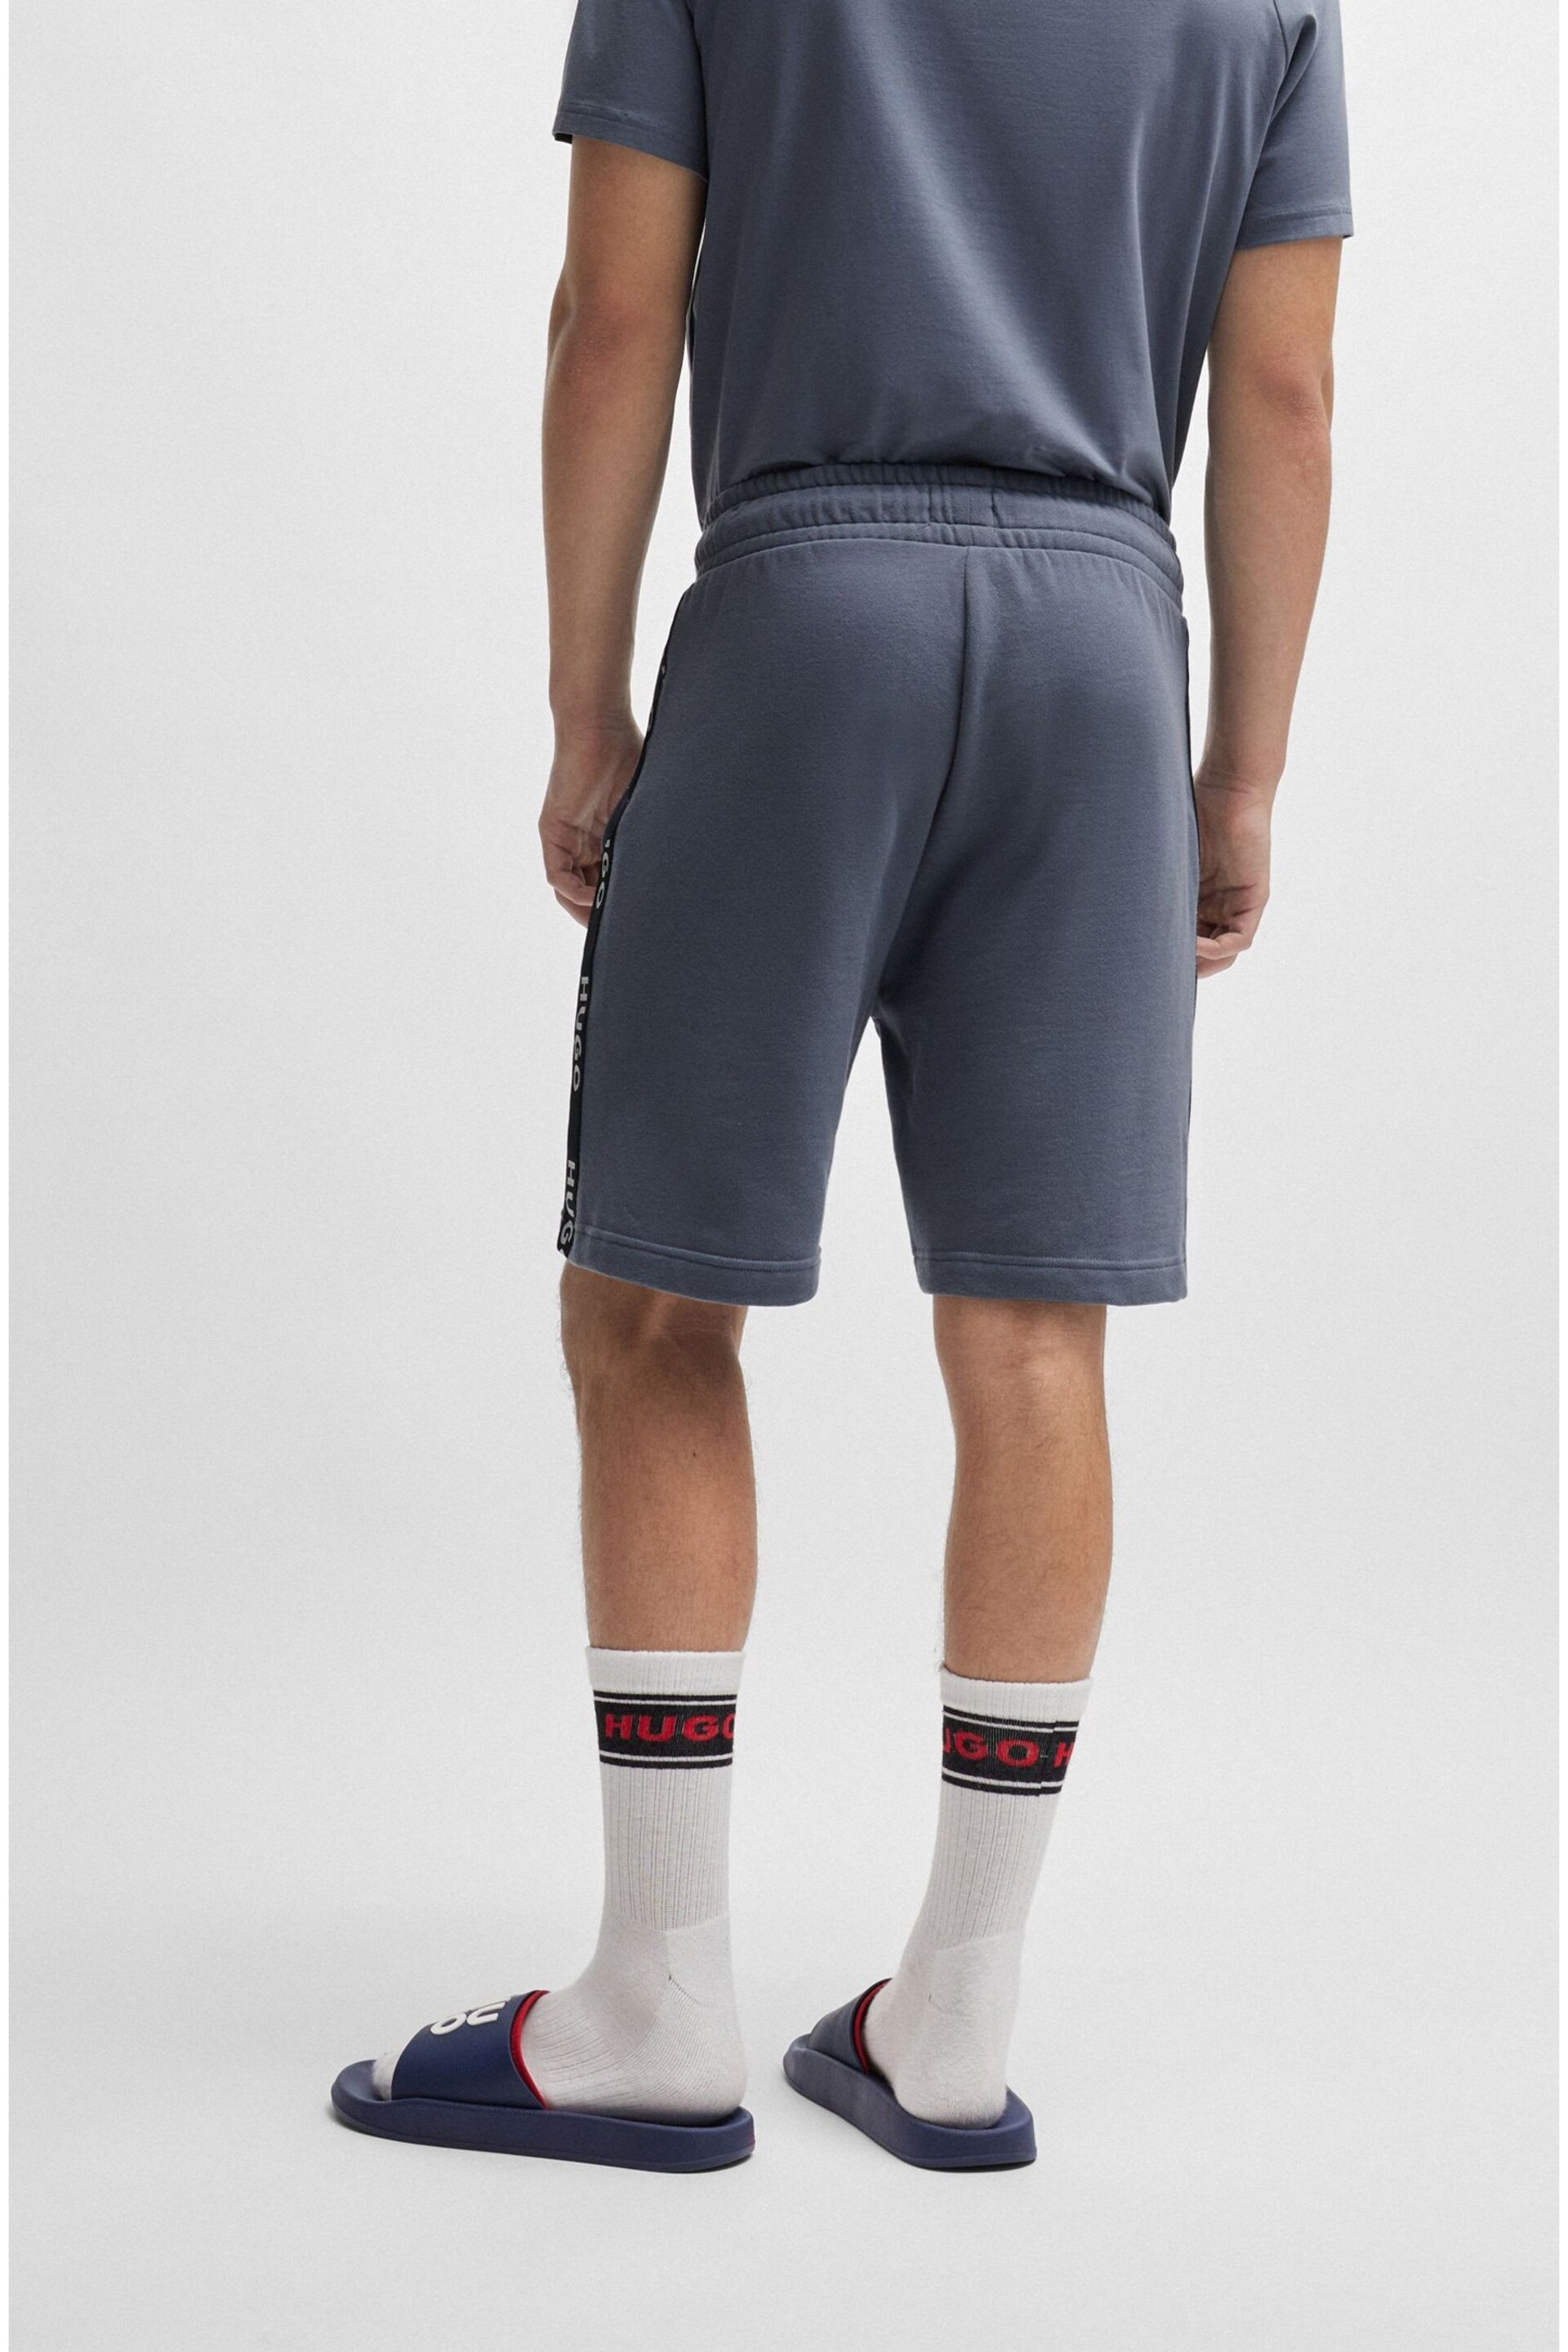 HUGO Tape Logo Jersey Shorts - Image 2 of 5